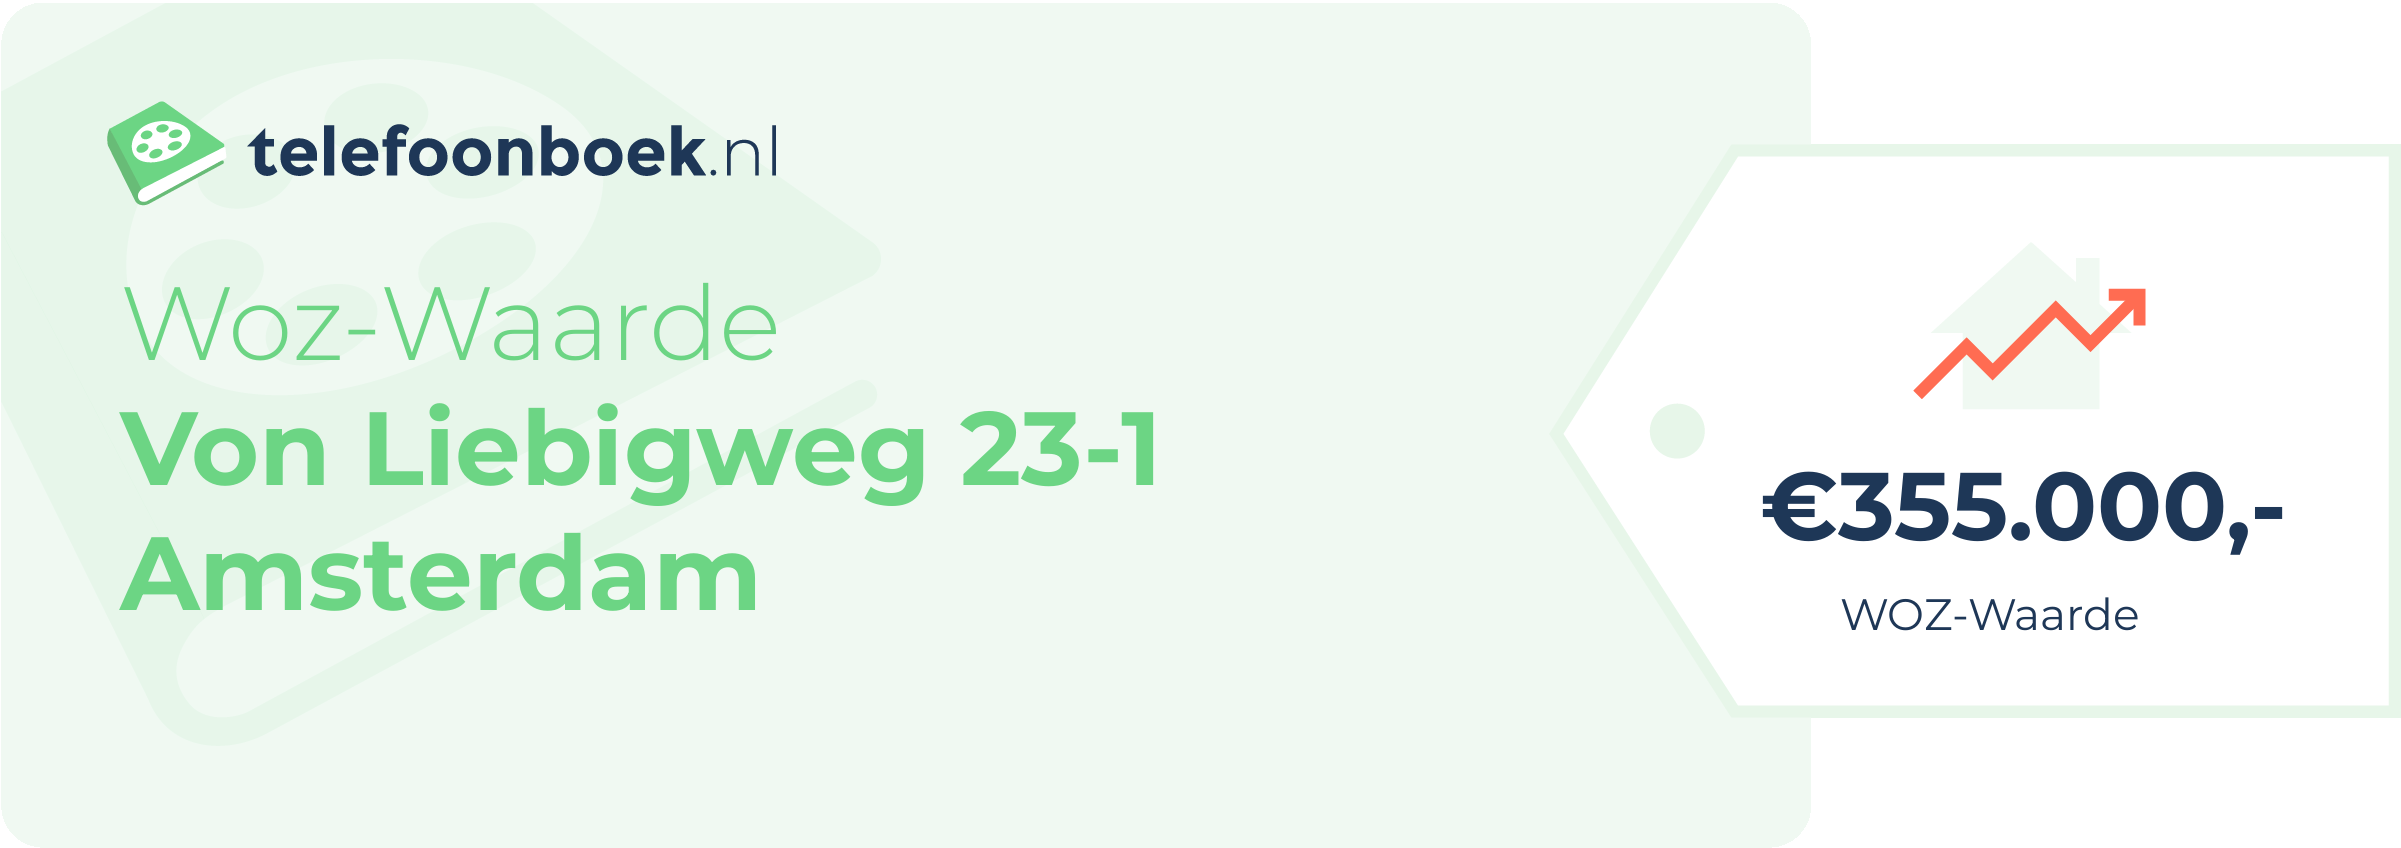 WOZ-waarde Von Liebigweg 23-1 Amsterdam